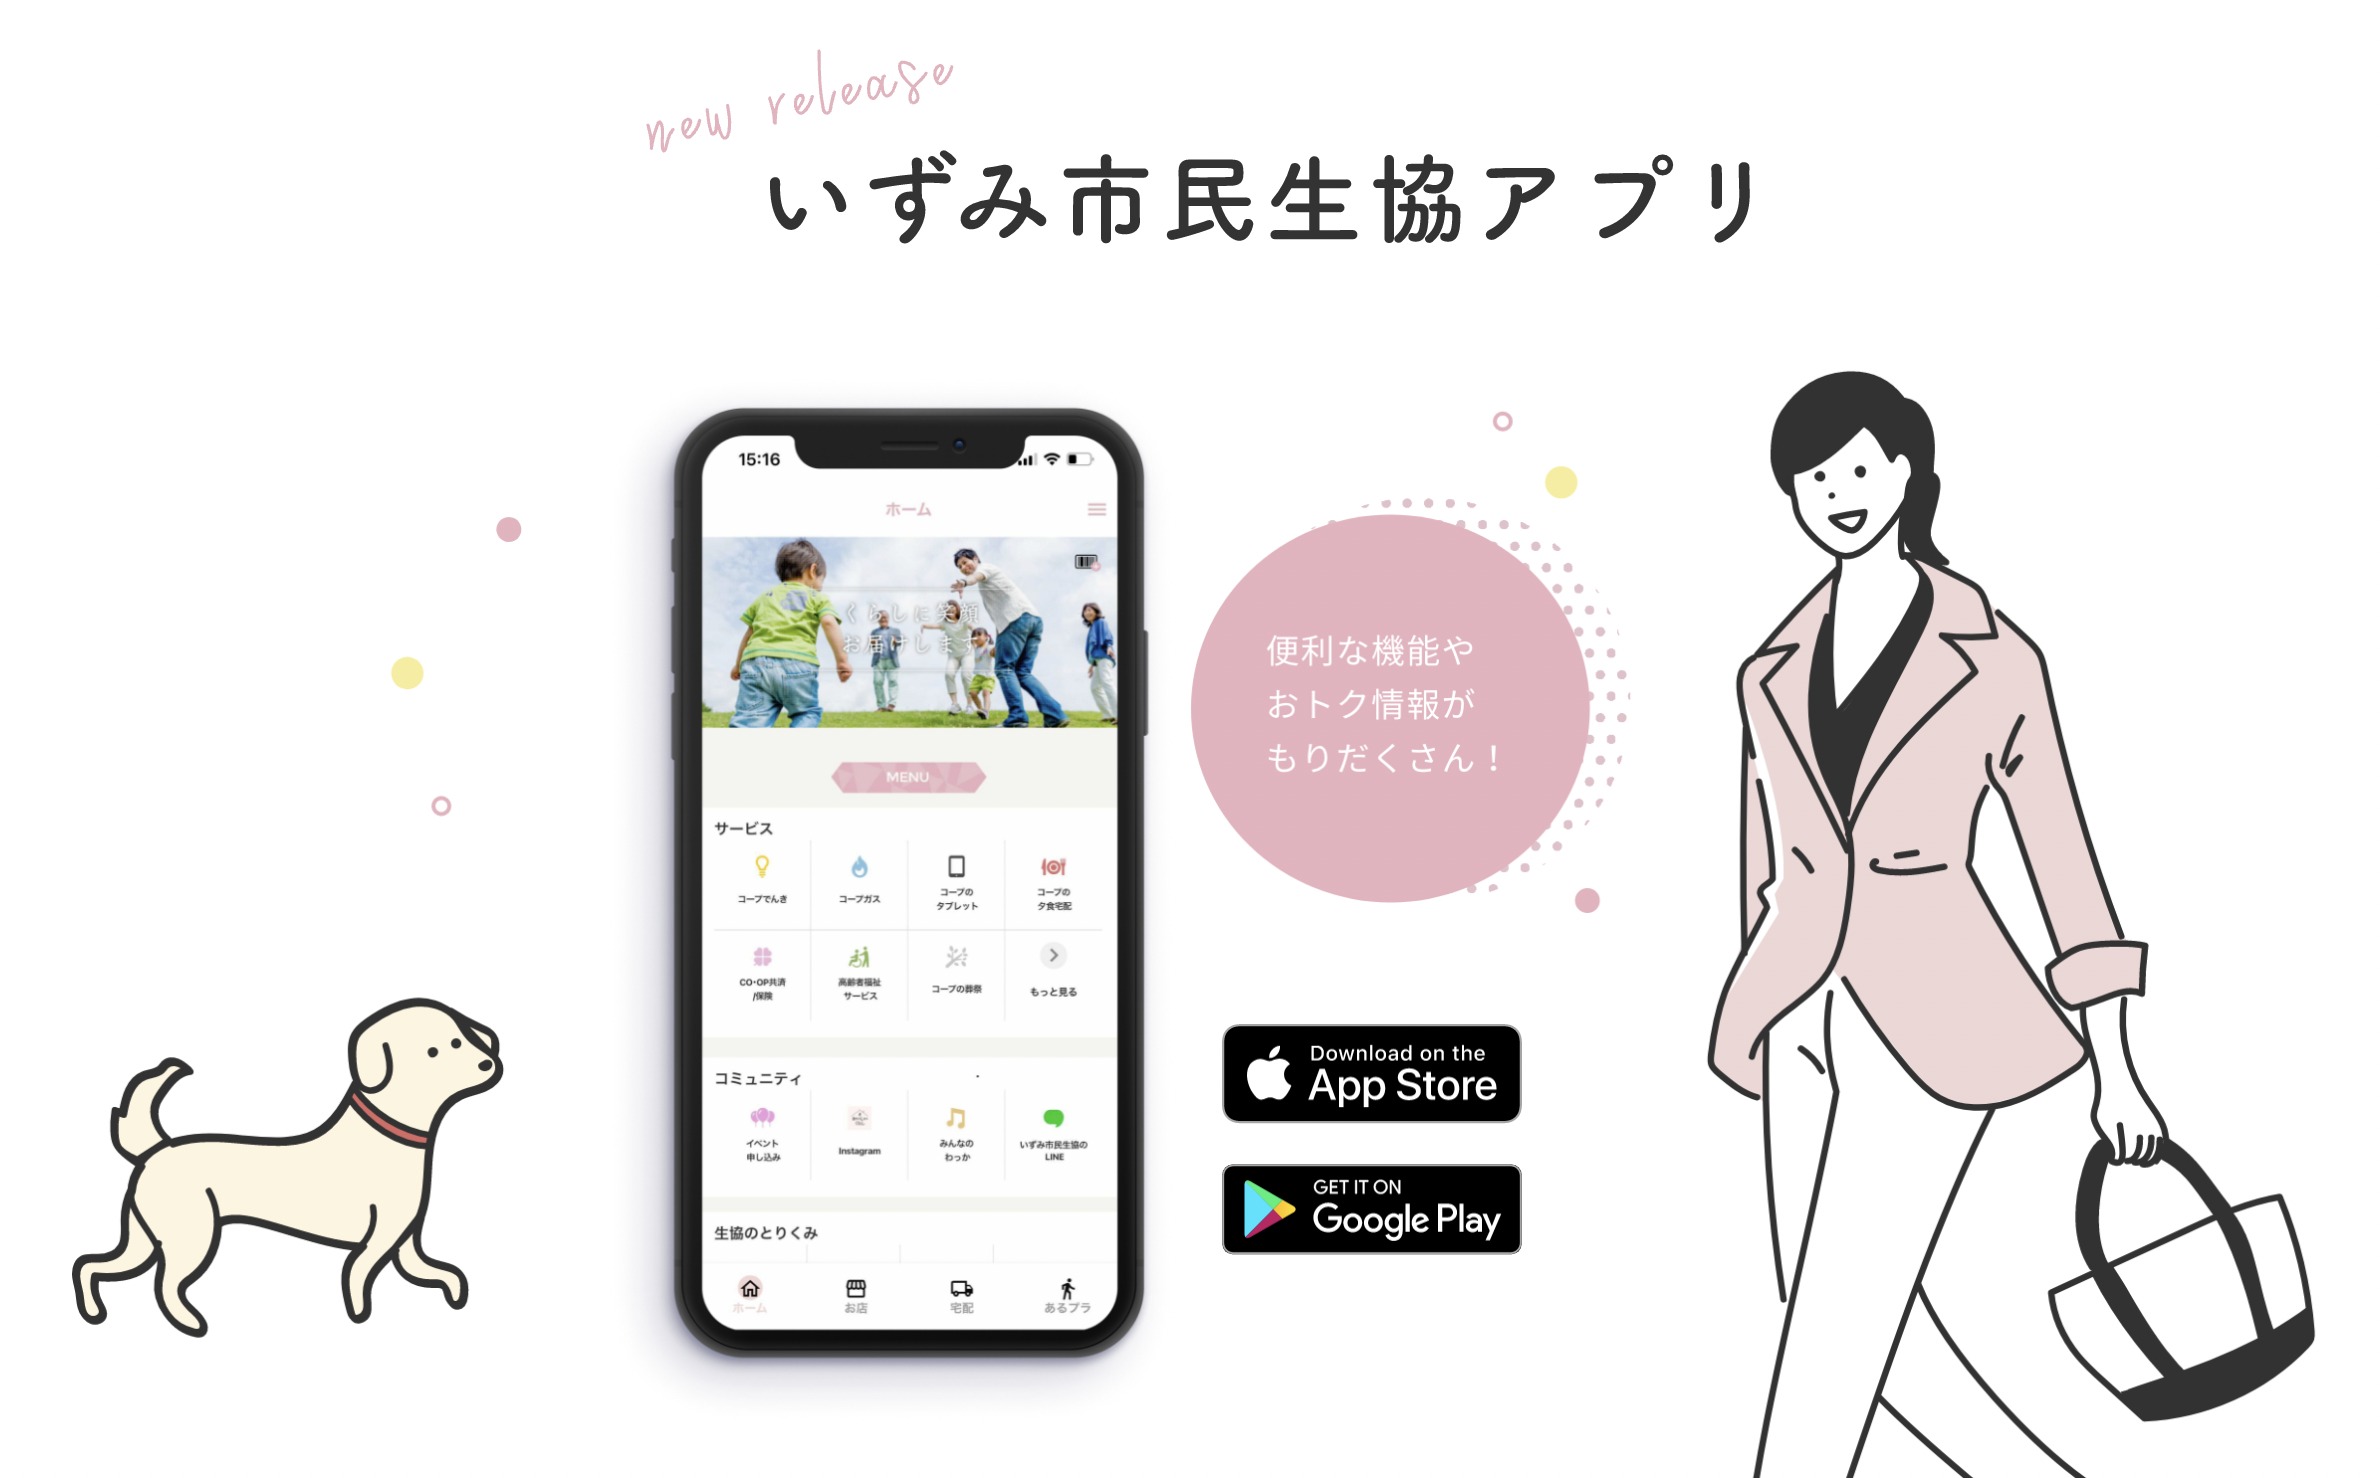 大阪いずみ市民生協アプリの画像